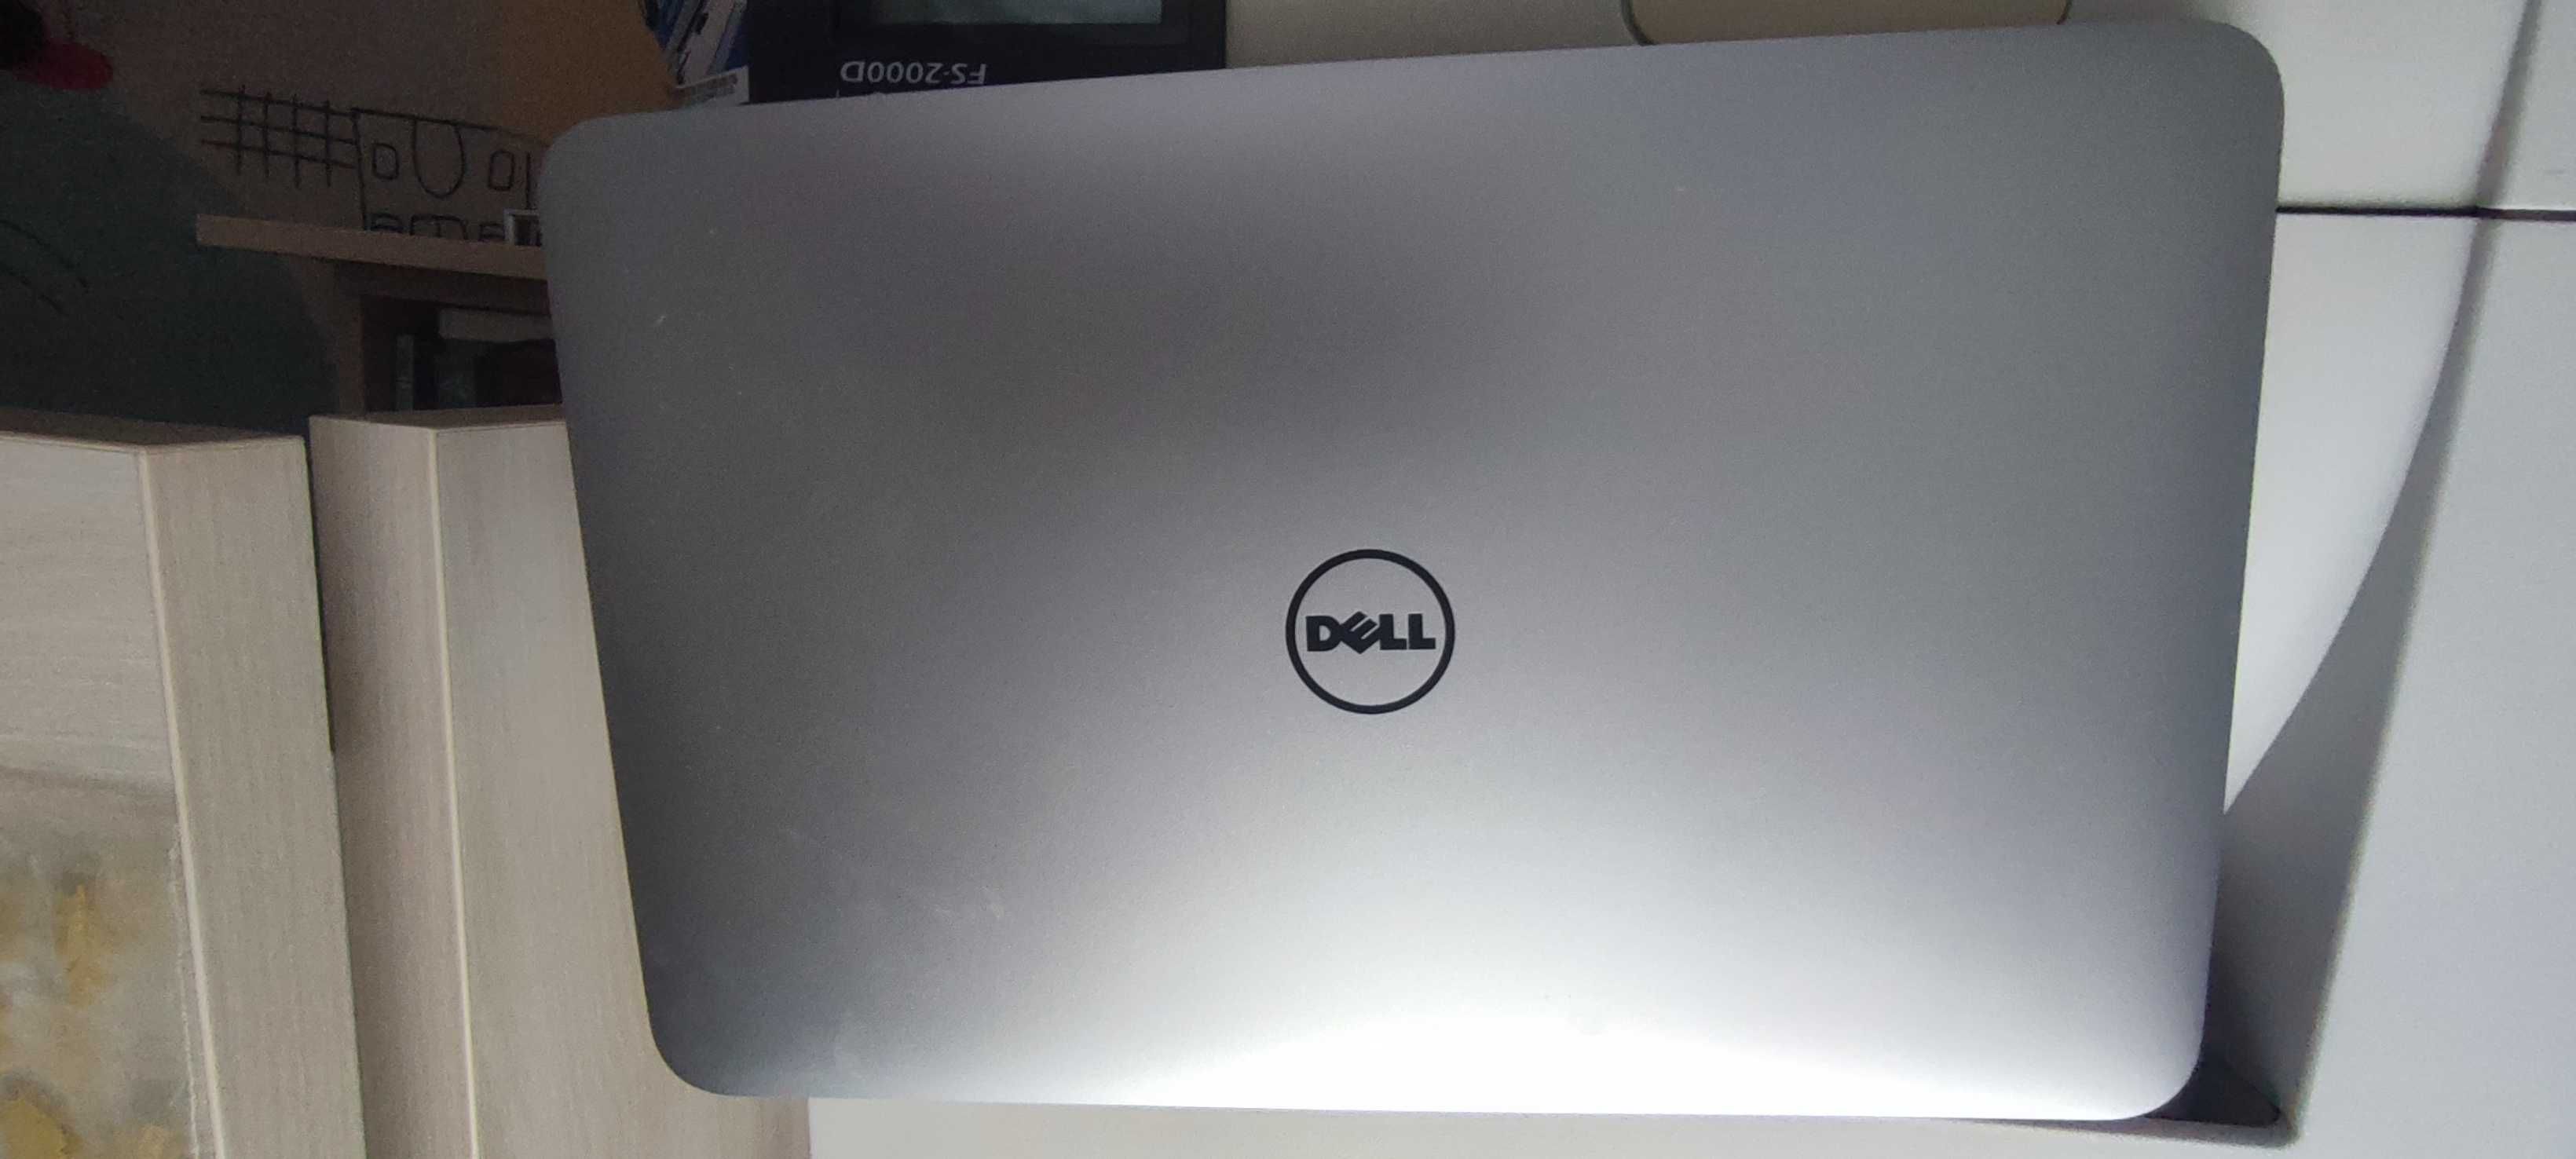 Dell xps 13 i7 / 250gb ssd / 4gb ram Laptop Ultrabook L321X